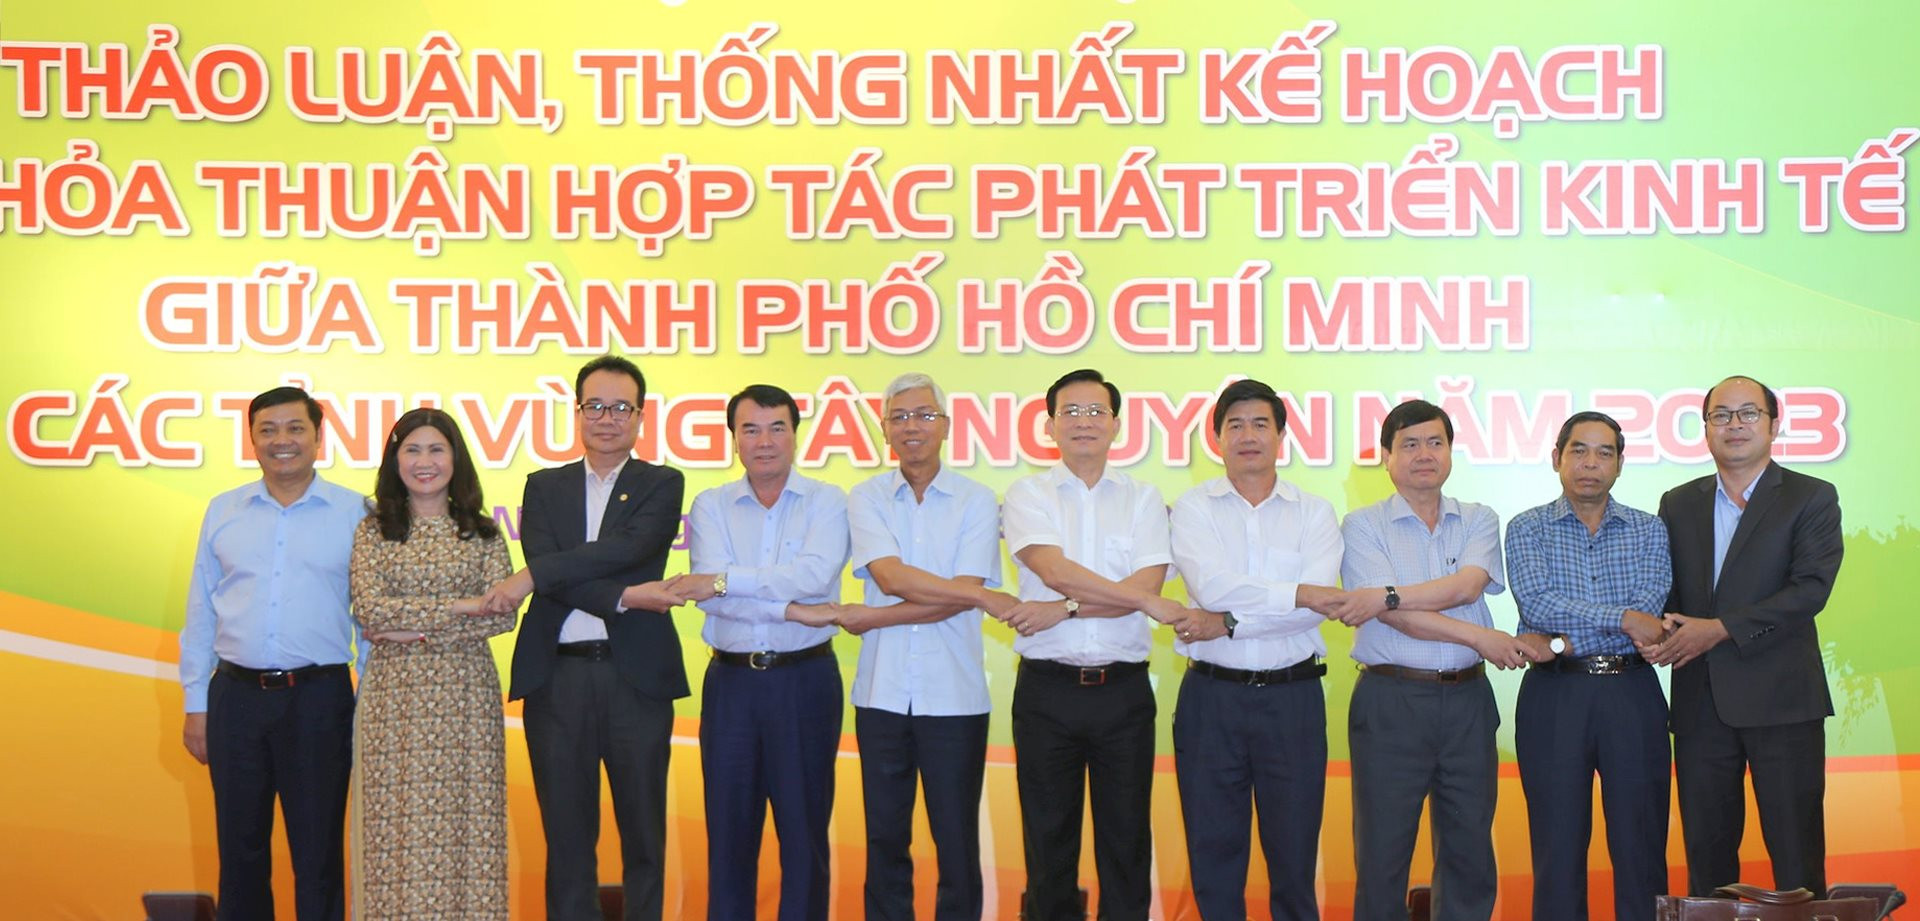 Lãnh đạo các tỉnh Tây Nguyên và TP. Hồ Chí Minh bắt tay hợp tác phát triển các mặt kinh tế-xã hội vào năm 2023.